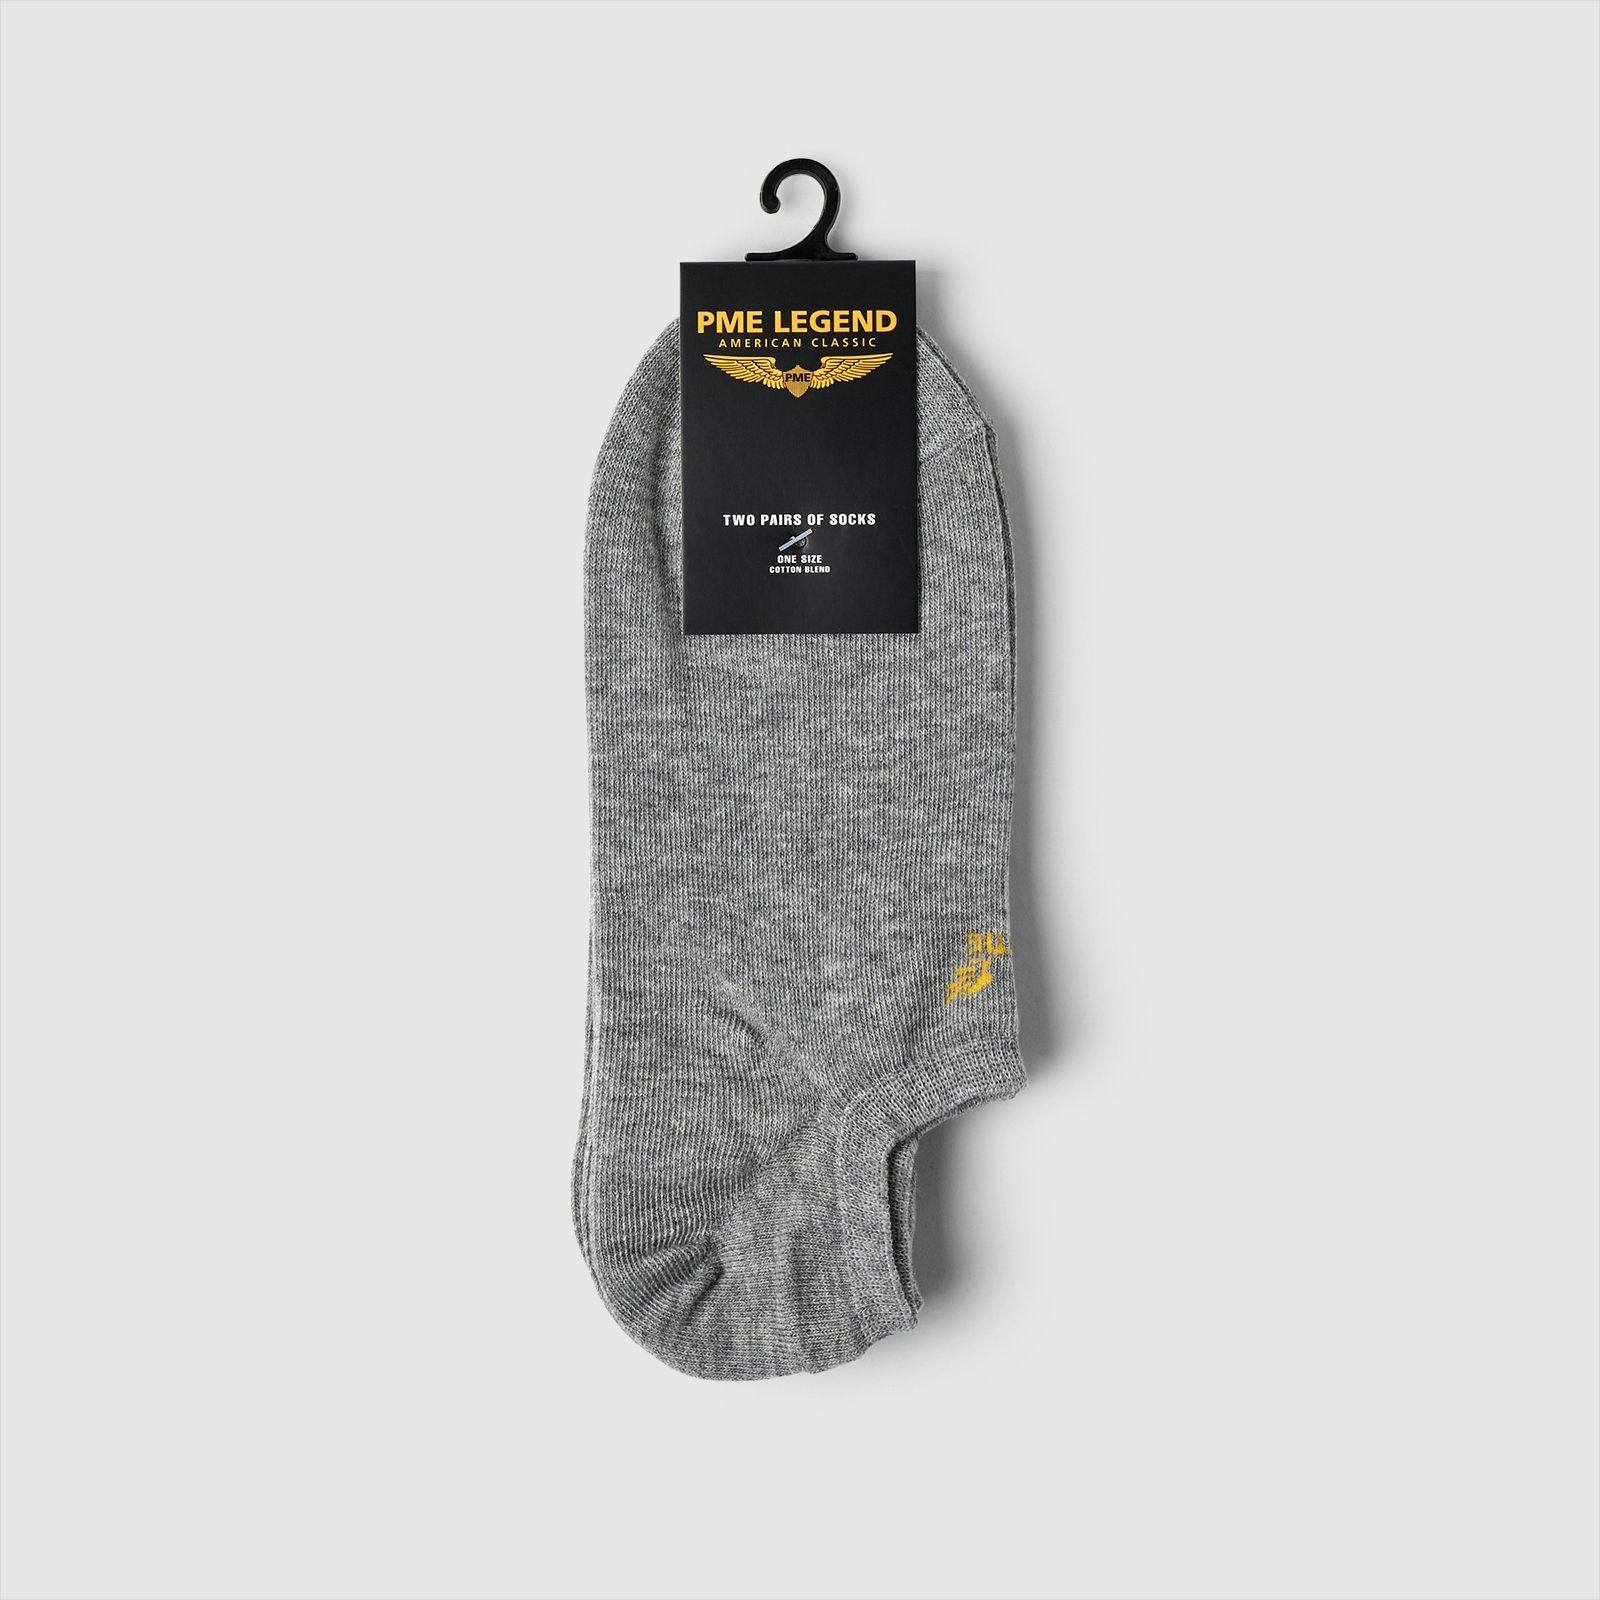 Pme Legend Socks Cotton blend 2-pack Grey 00105305-961